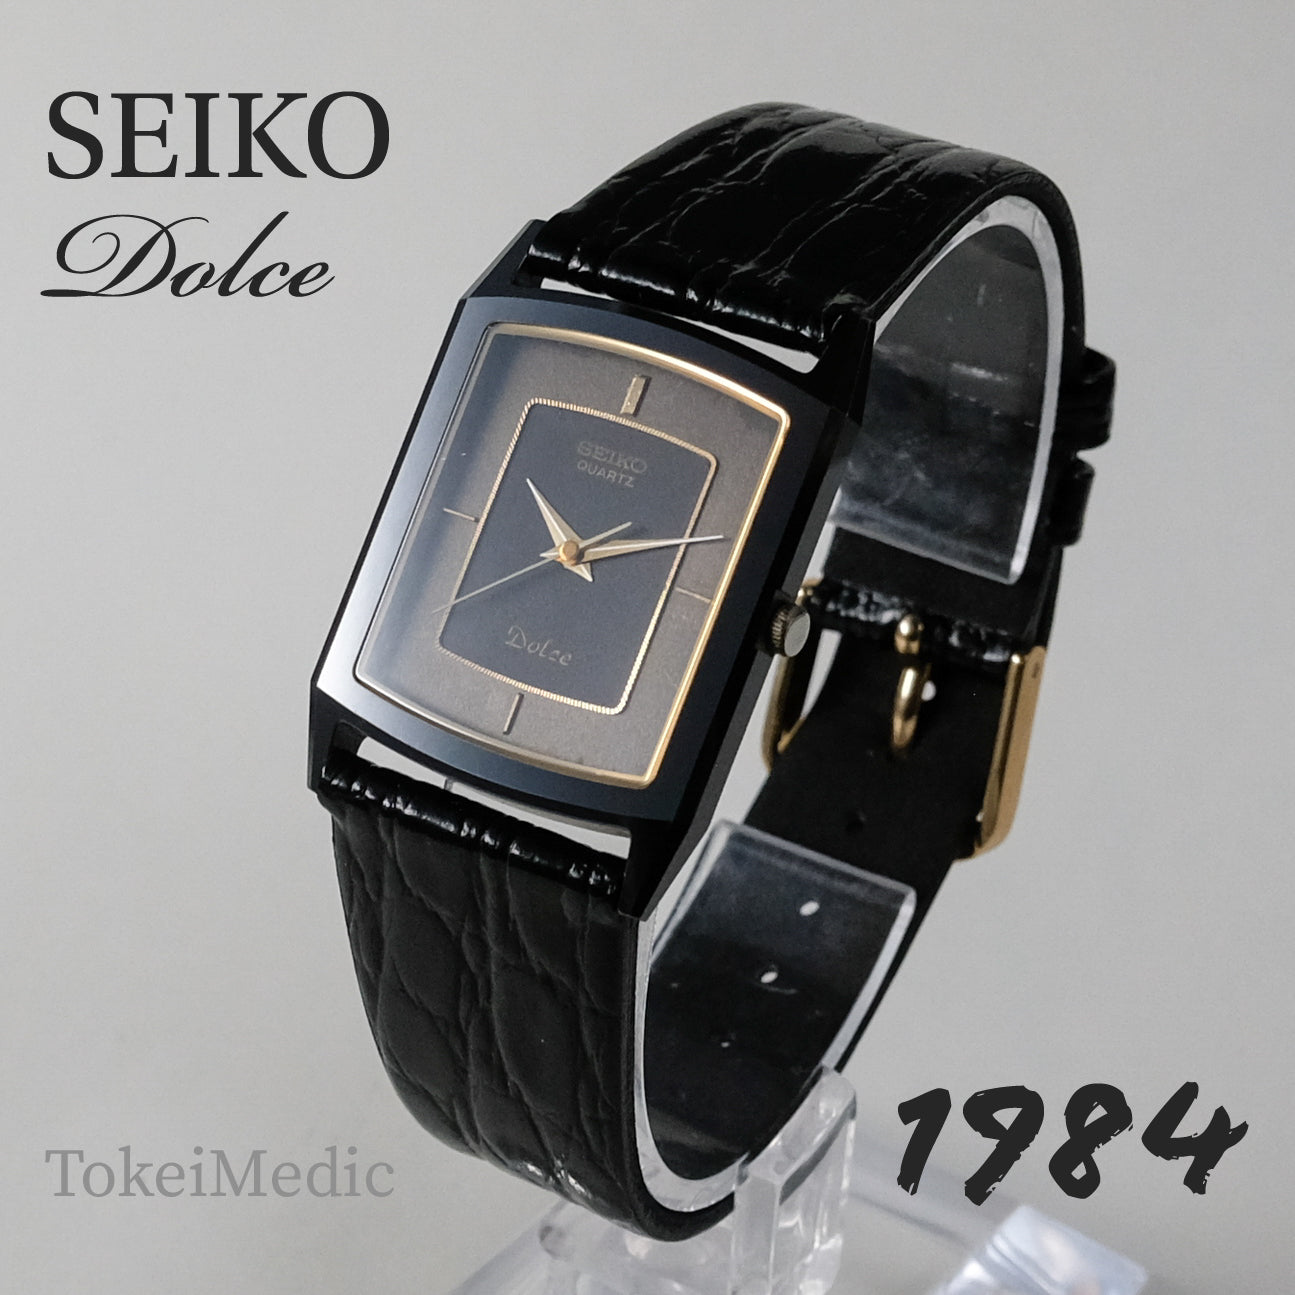 1984 Seiko Dolce 9521-5200